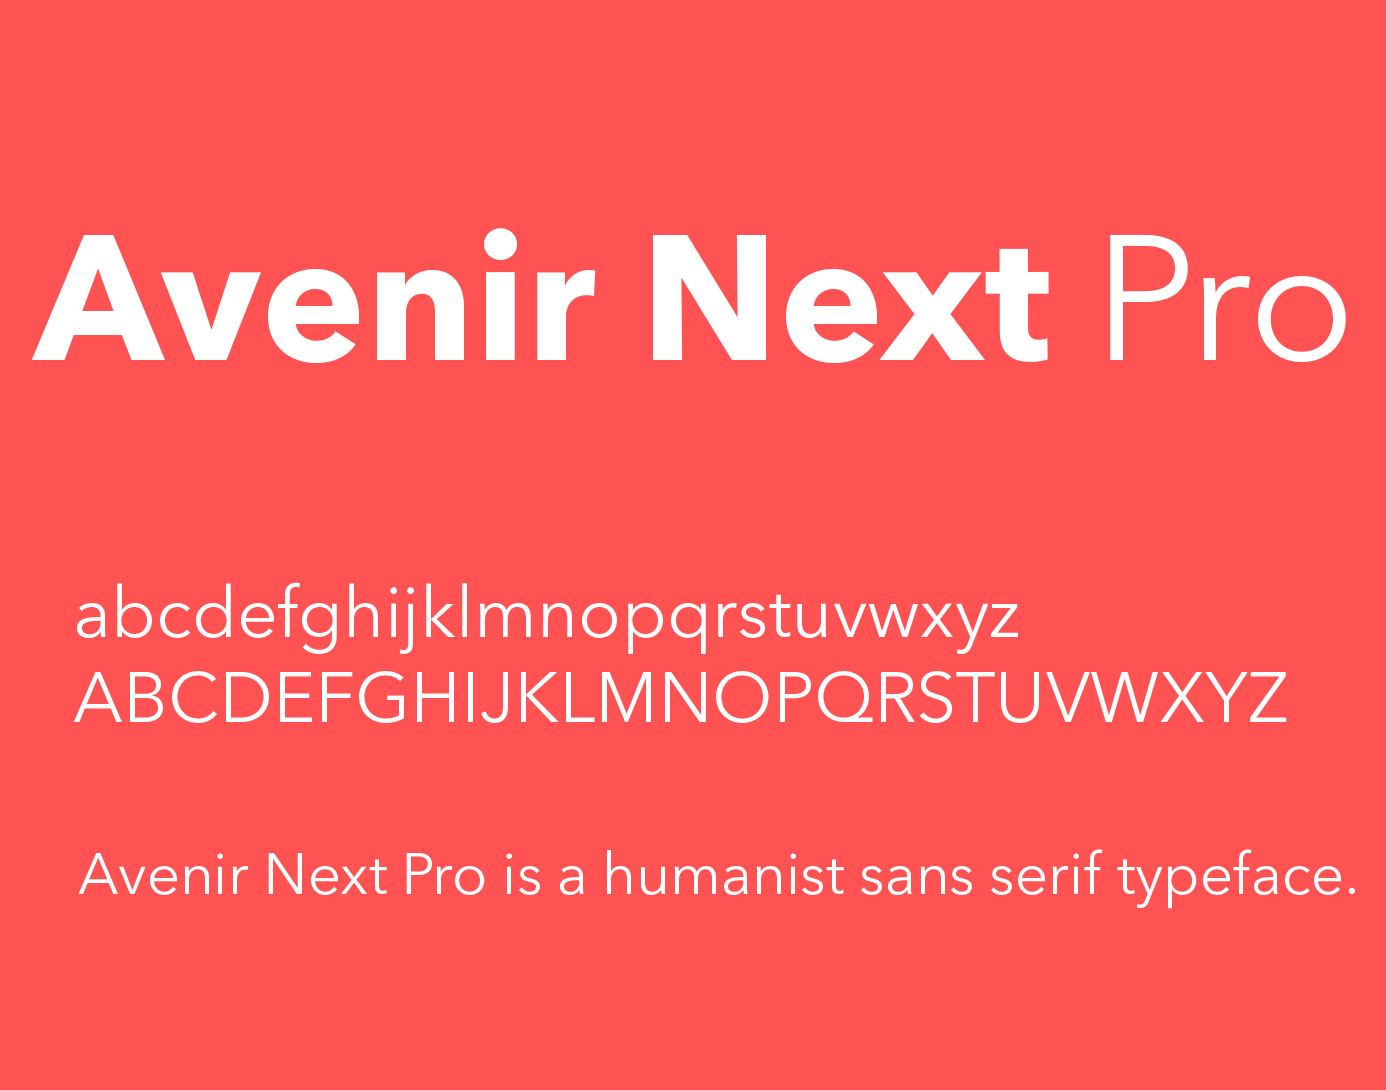 avenir next ultra light free font